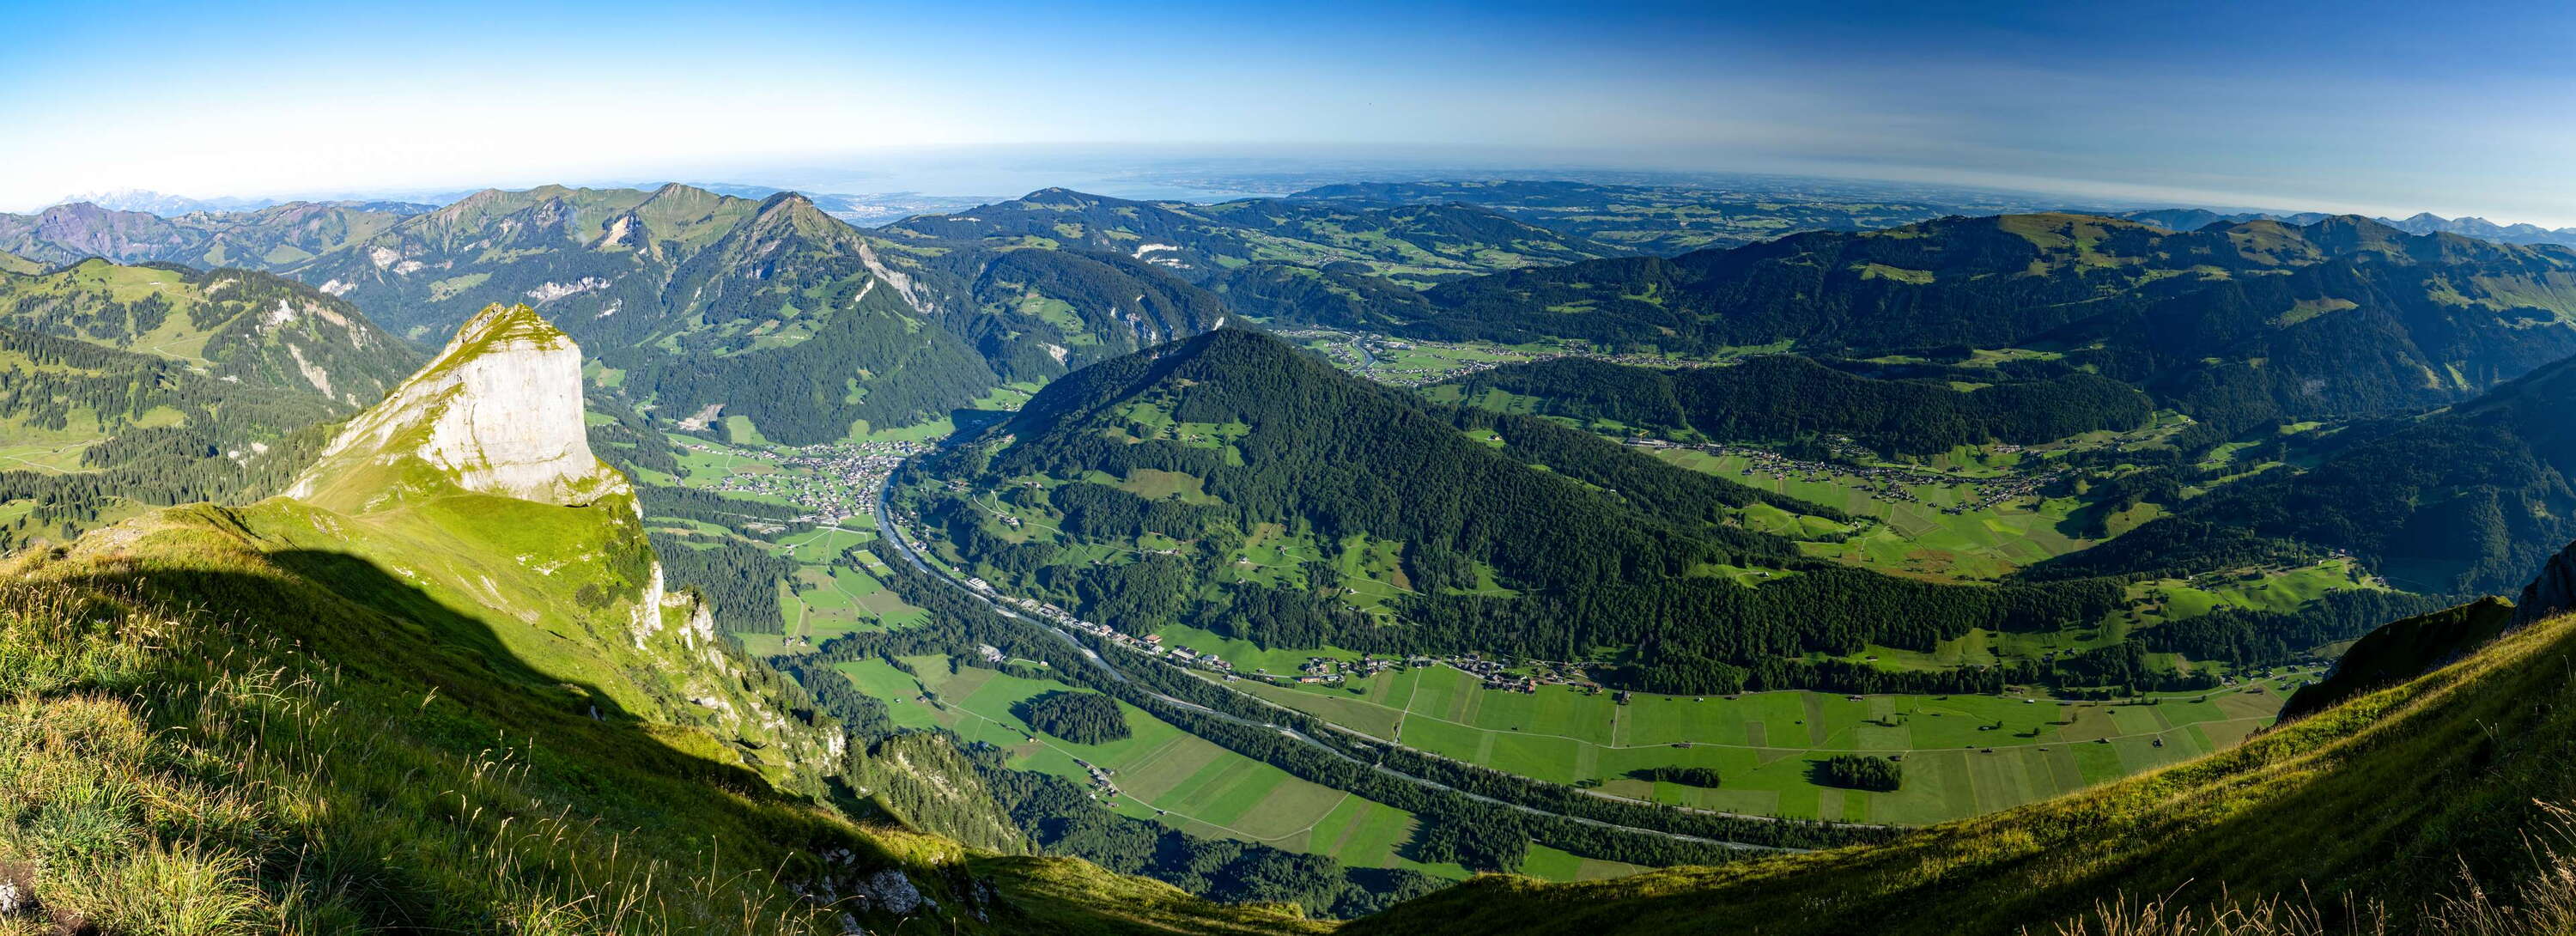 Bregenzerwald with Bregenzer Ach valley